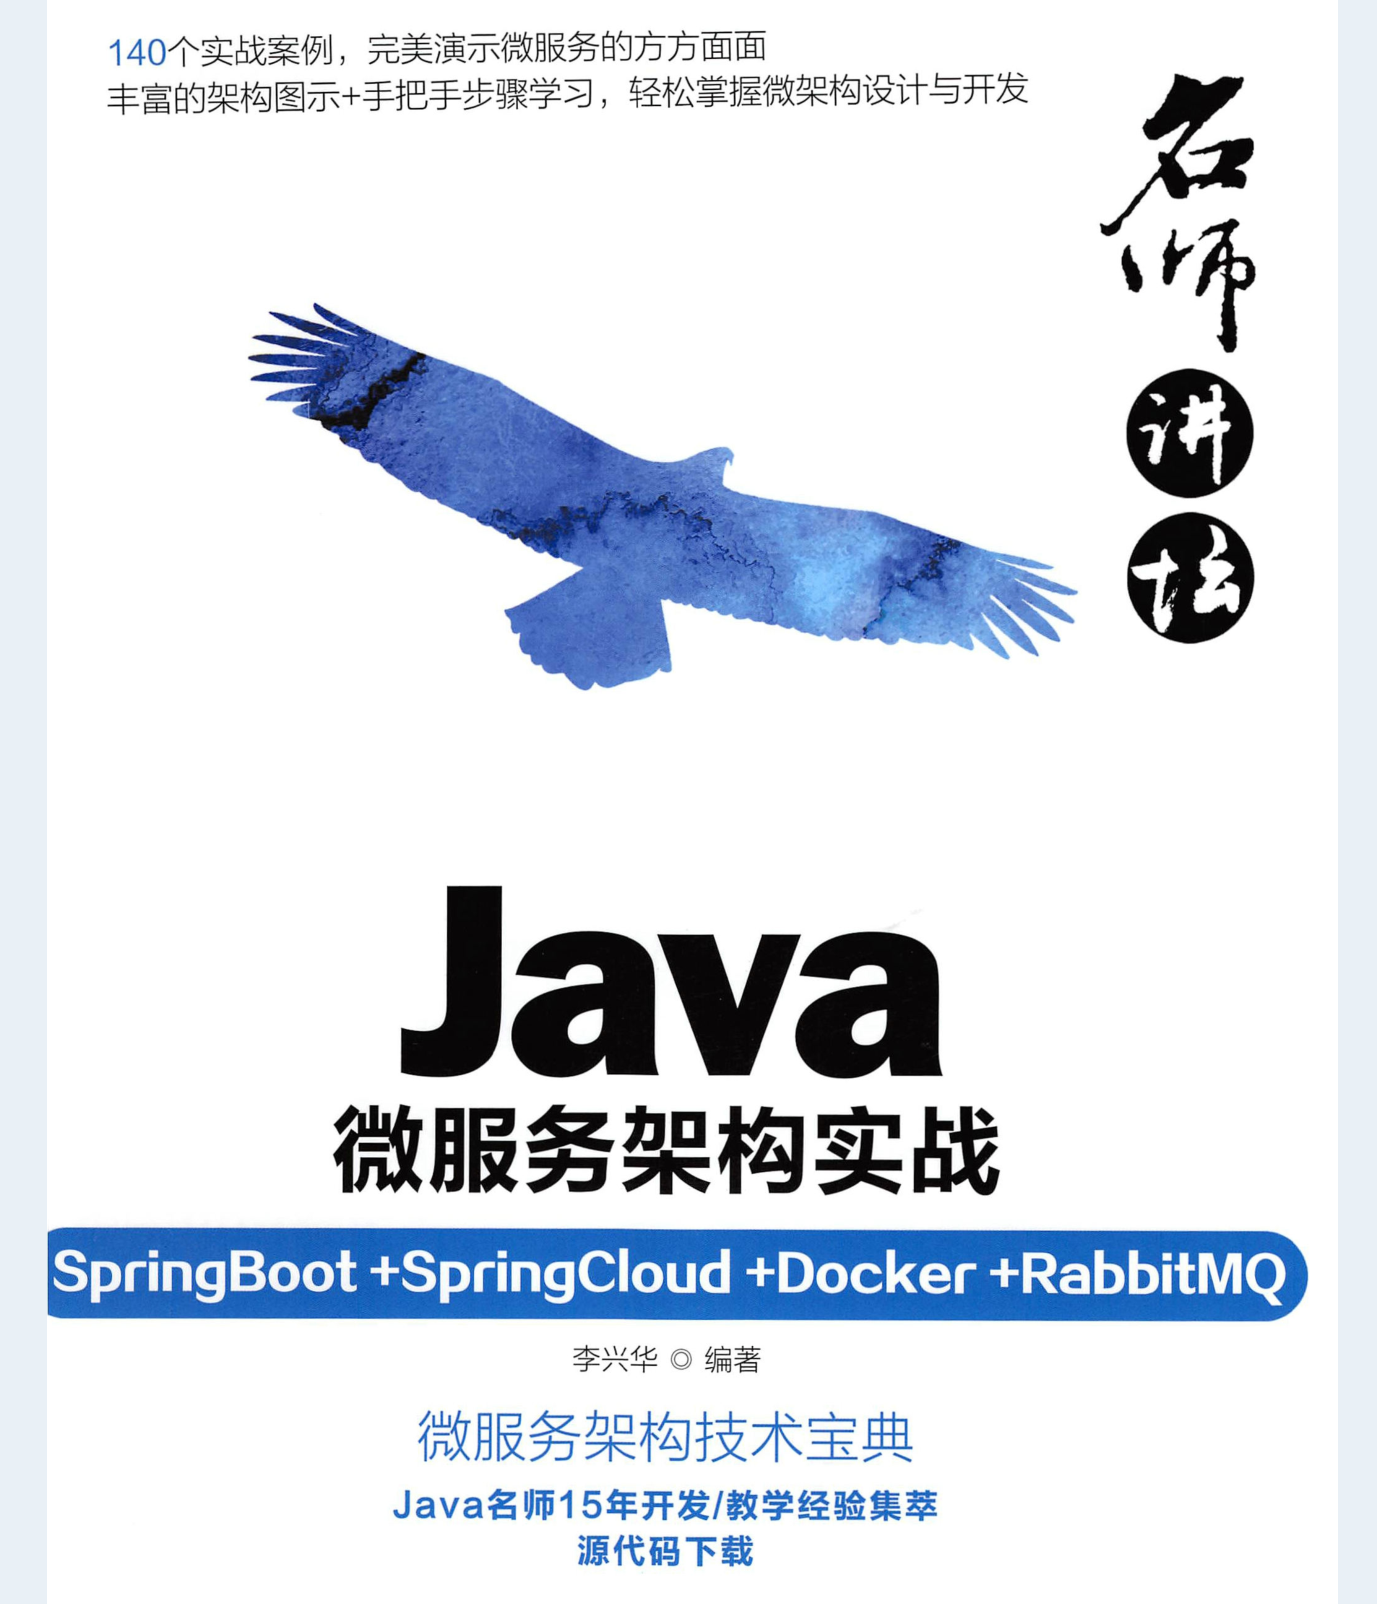 好家伙！阿里P8撰写的Java微服务架构全栈笔记GitHub一夜飞到榜首